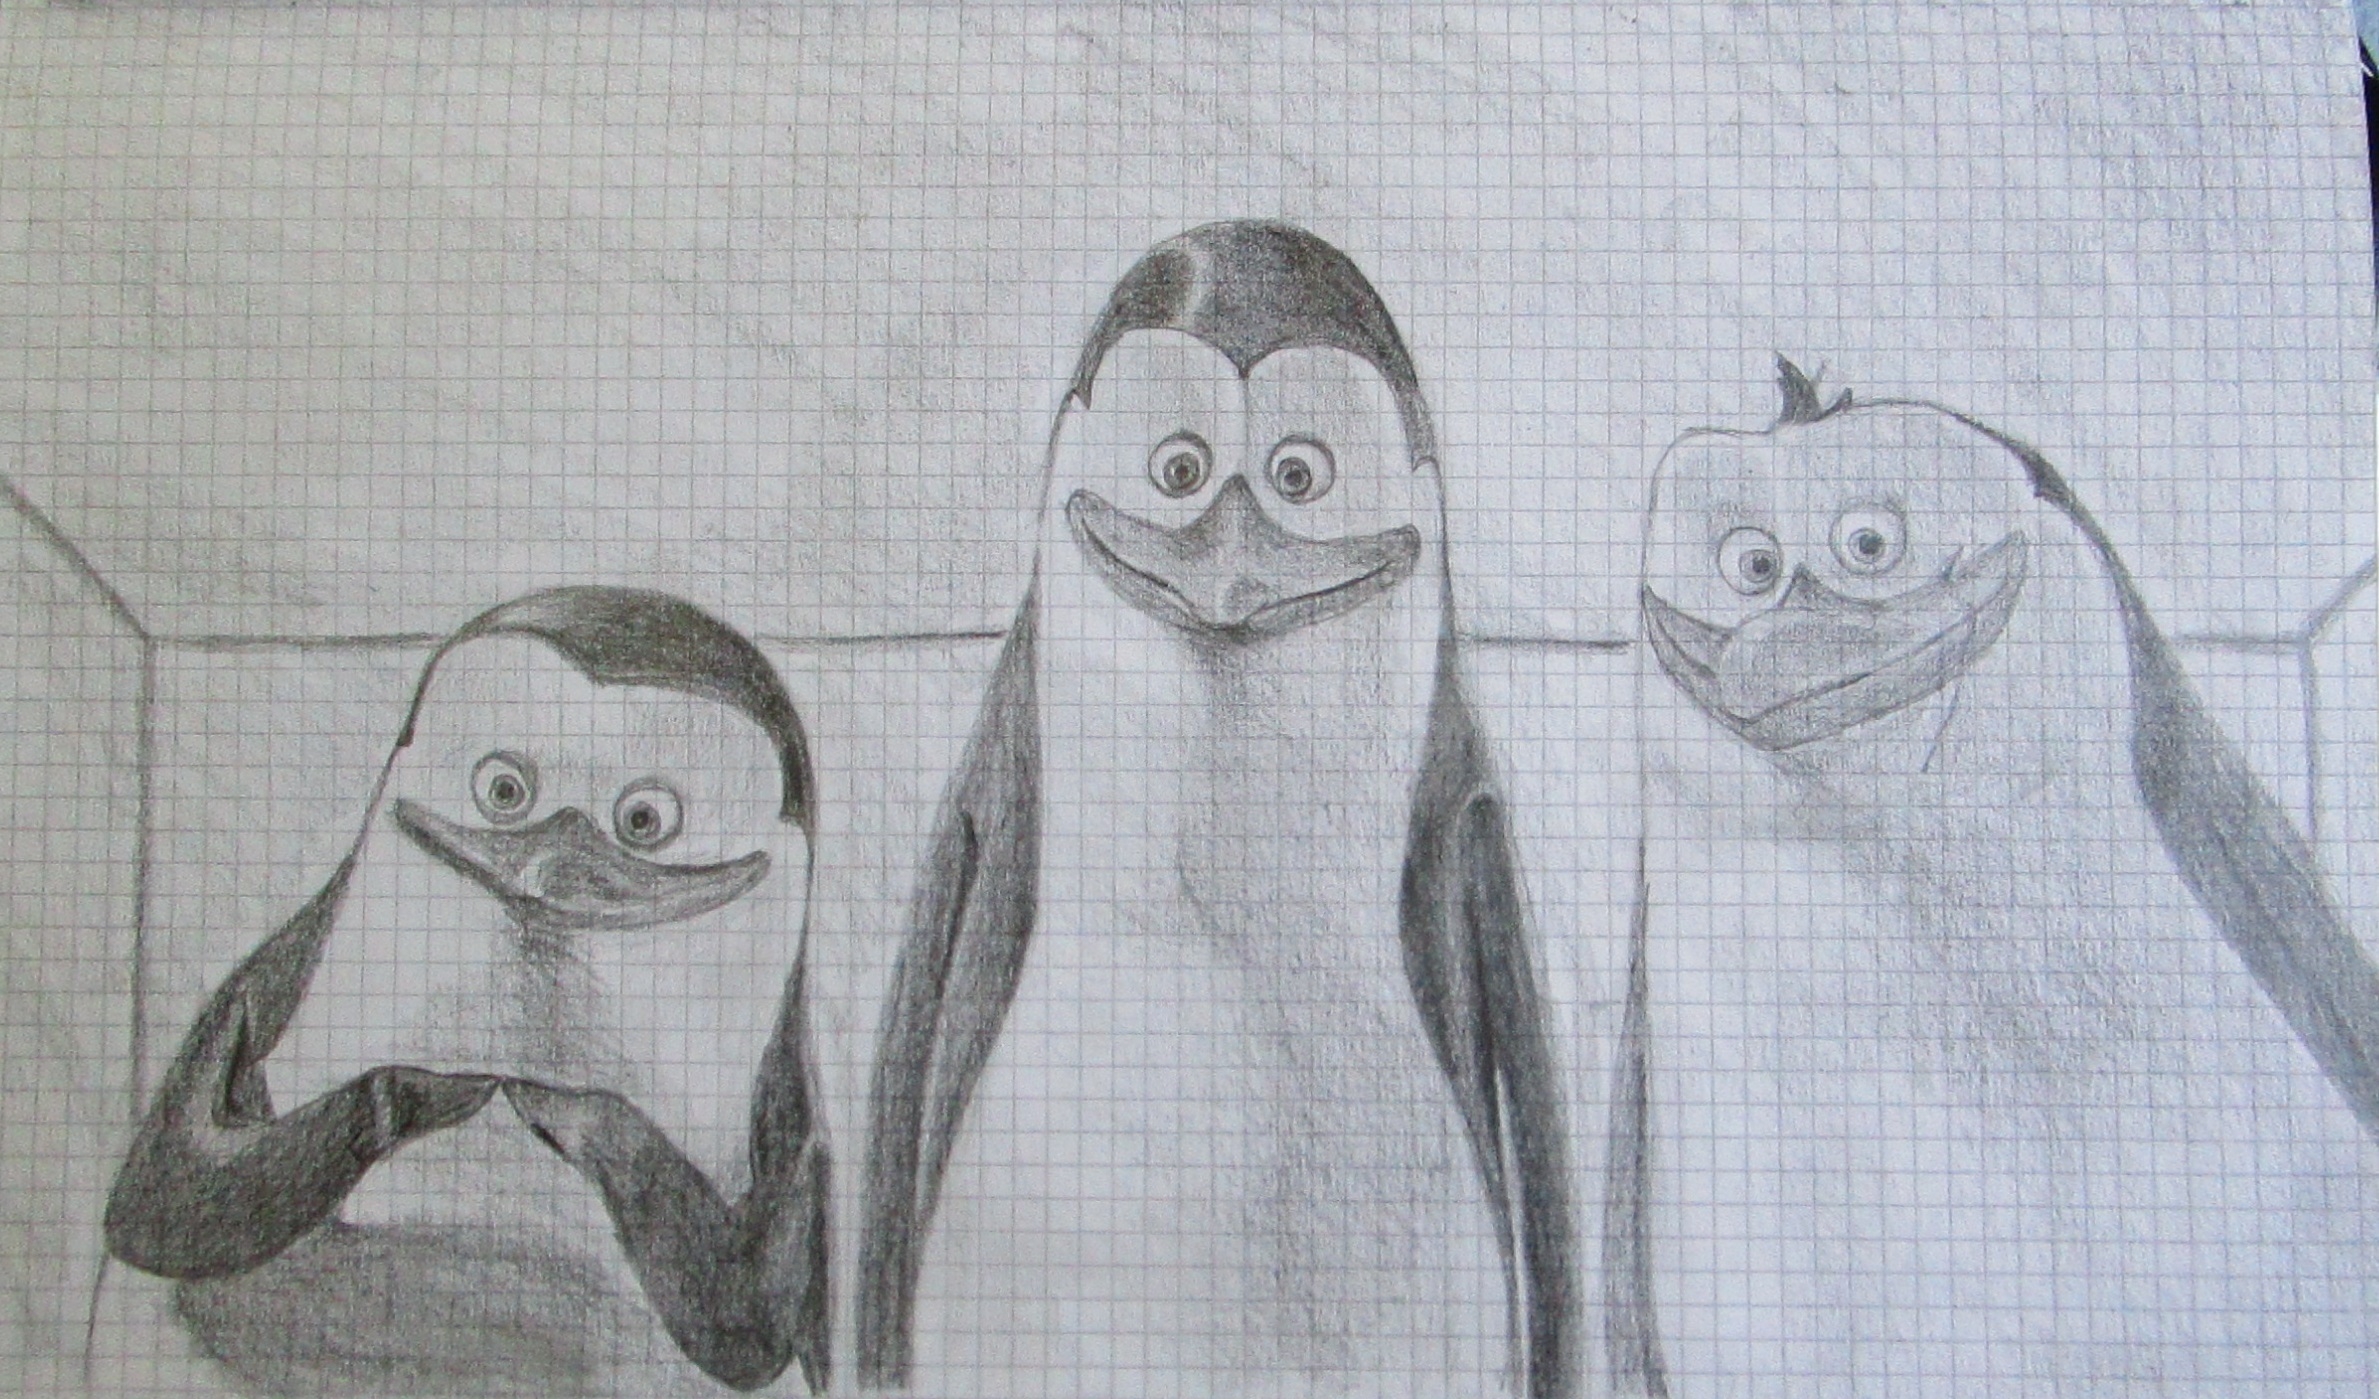 Как нарисовать пингвина поэтапно карандашом - полезные советы, мастер-классы, фото примеры и идеи